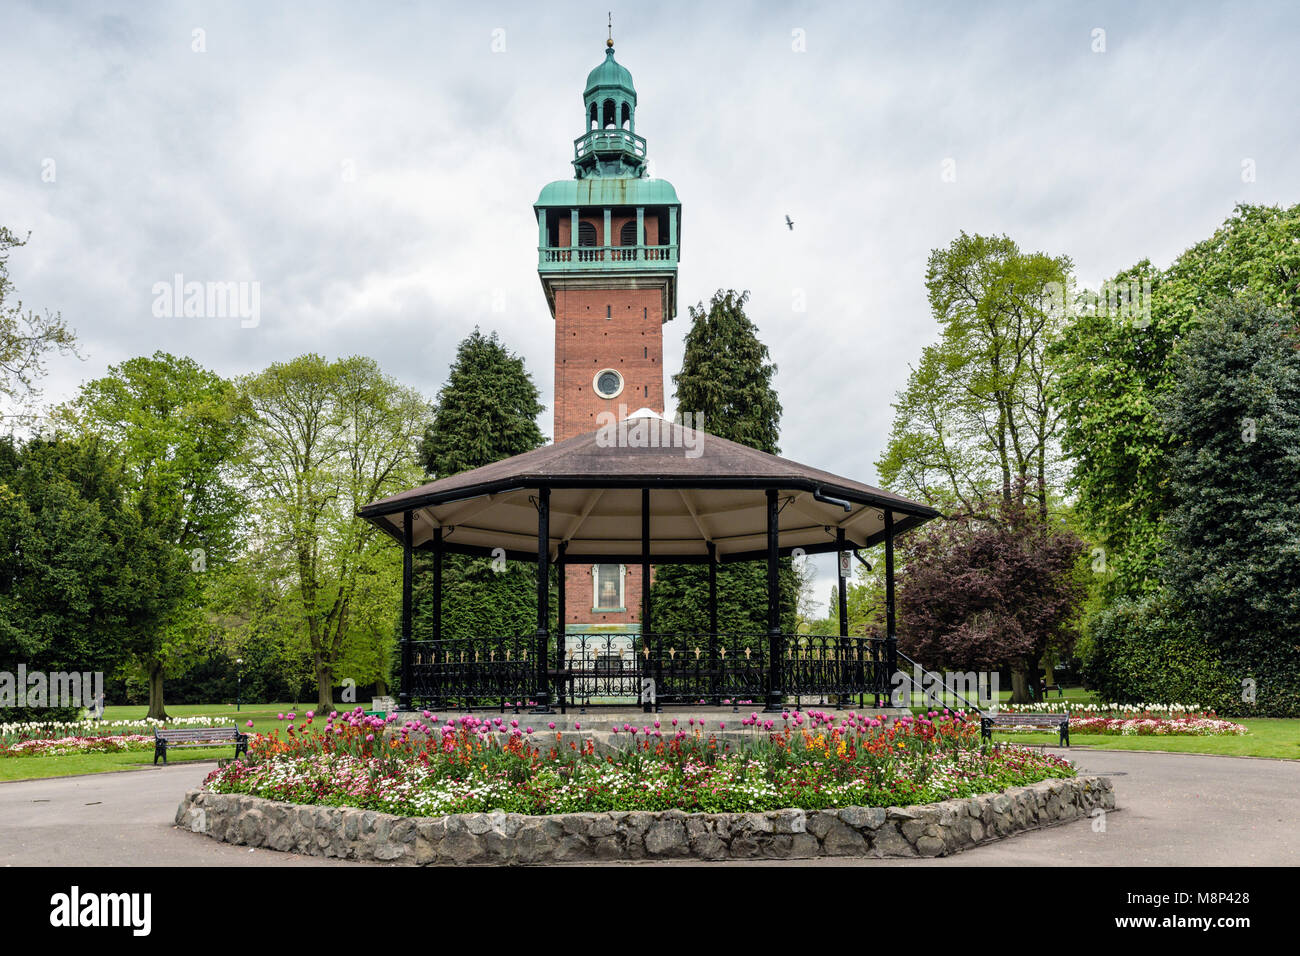 Carillon War Memorial et kiosque à musique, Queen's Park, Loughborough, Leicestershire, England, UK Banque D'Images